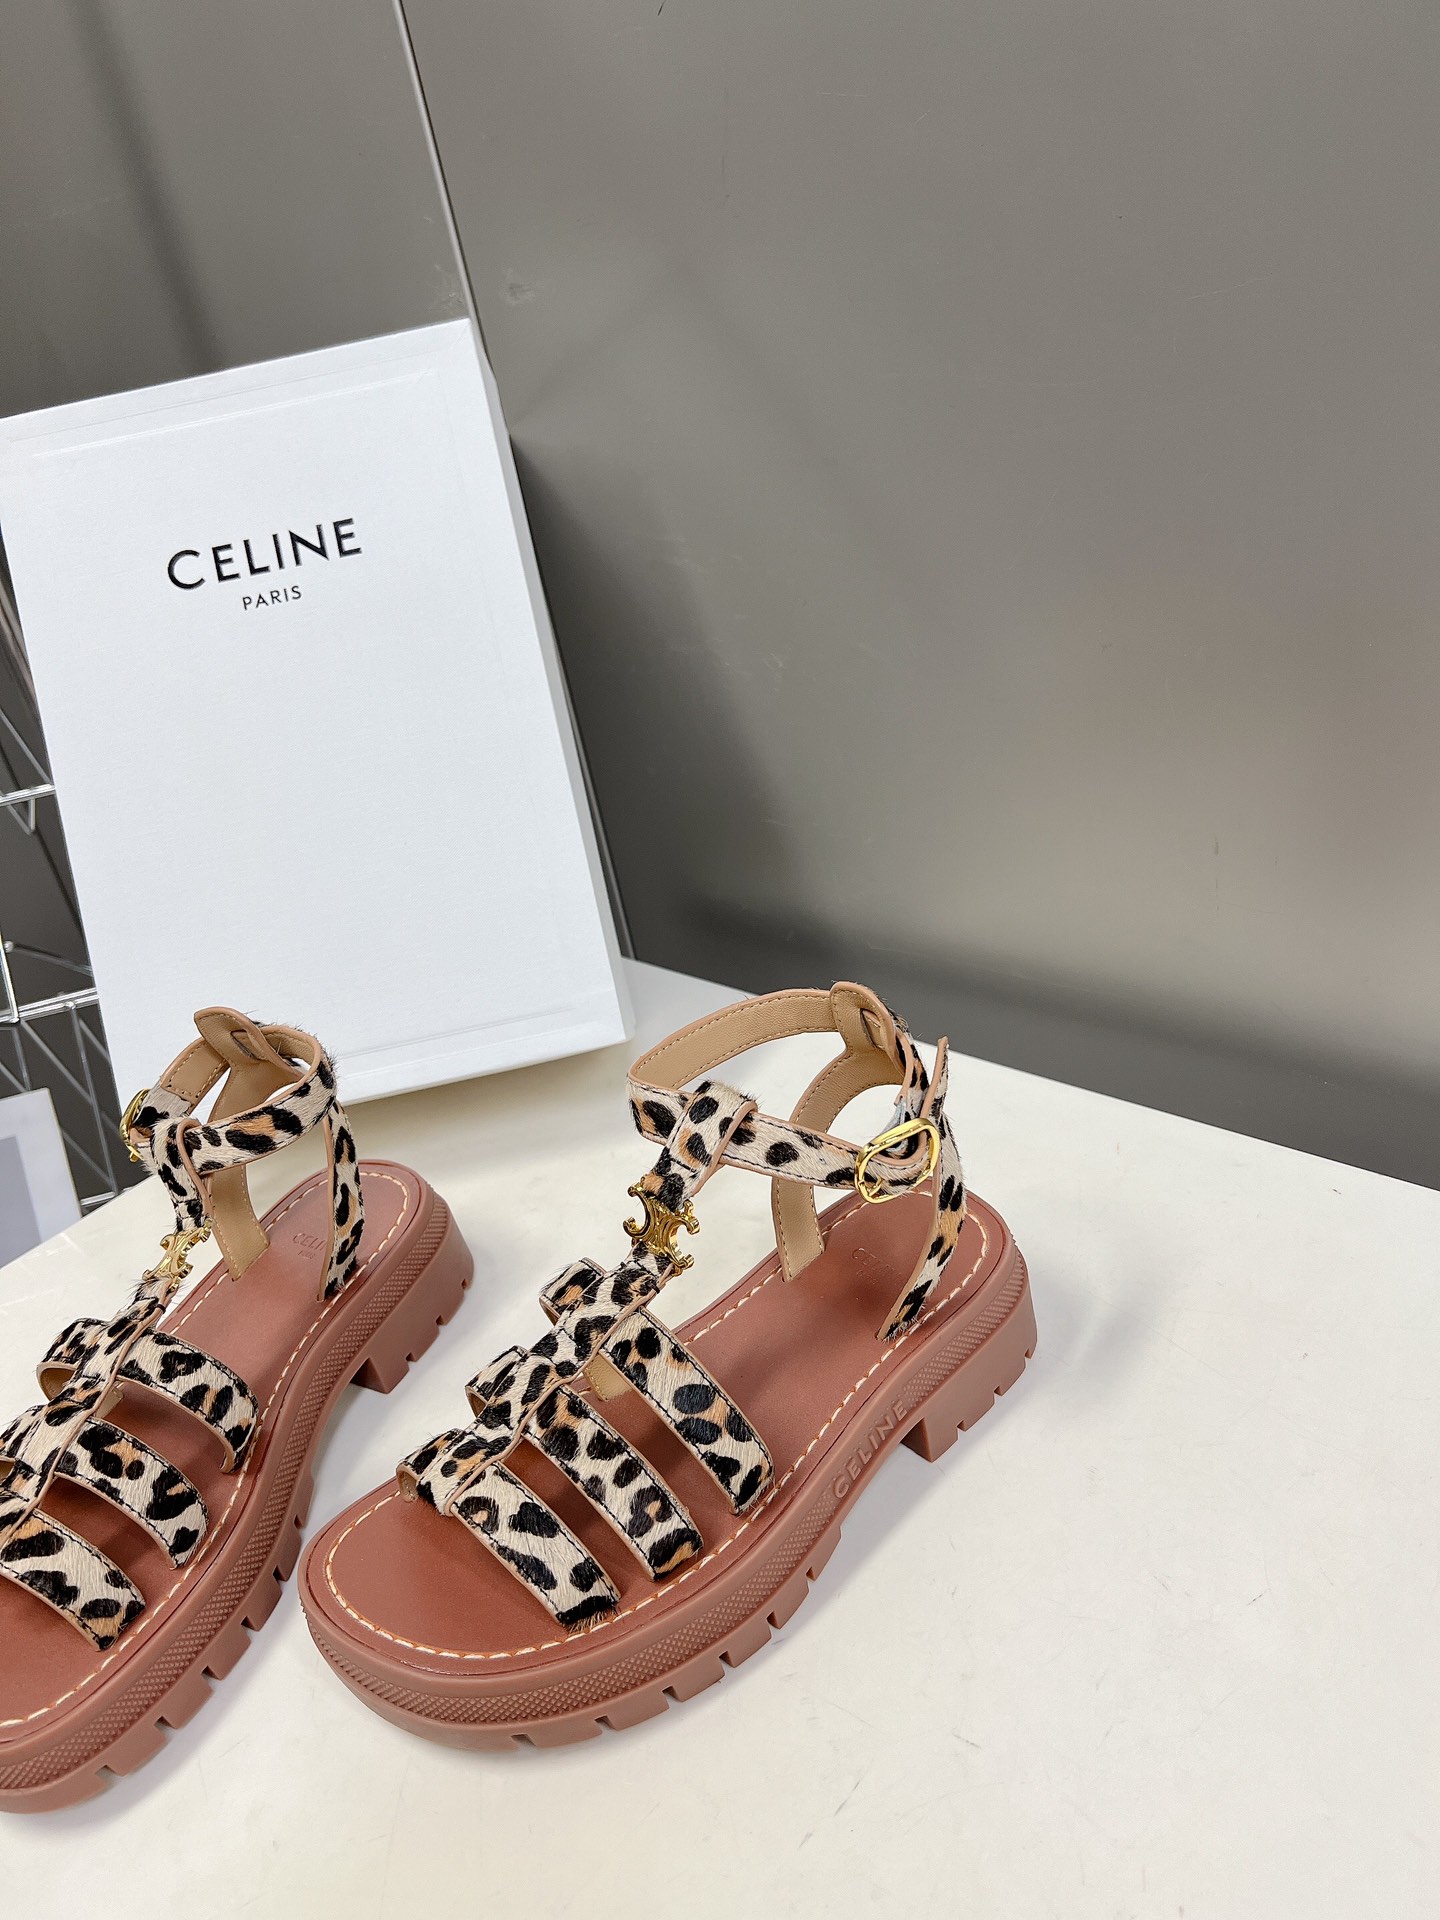 Celine思琳经典春最新爆款沙滩凉鞋夏天搭配袜子简直绝绝子复古的点上带上了满分时髦感颜值原版购入开发依